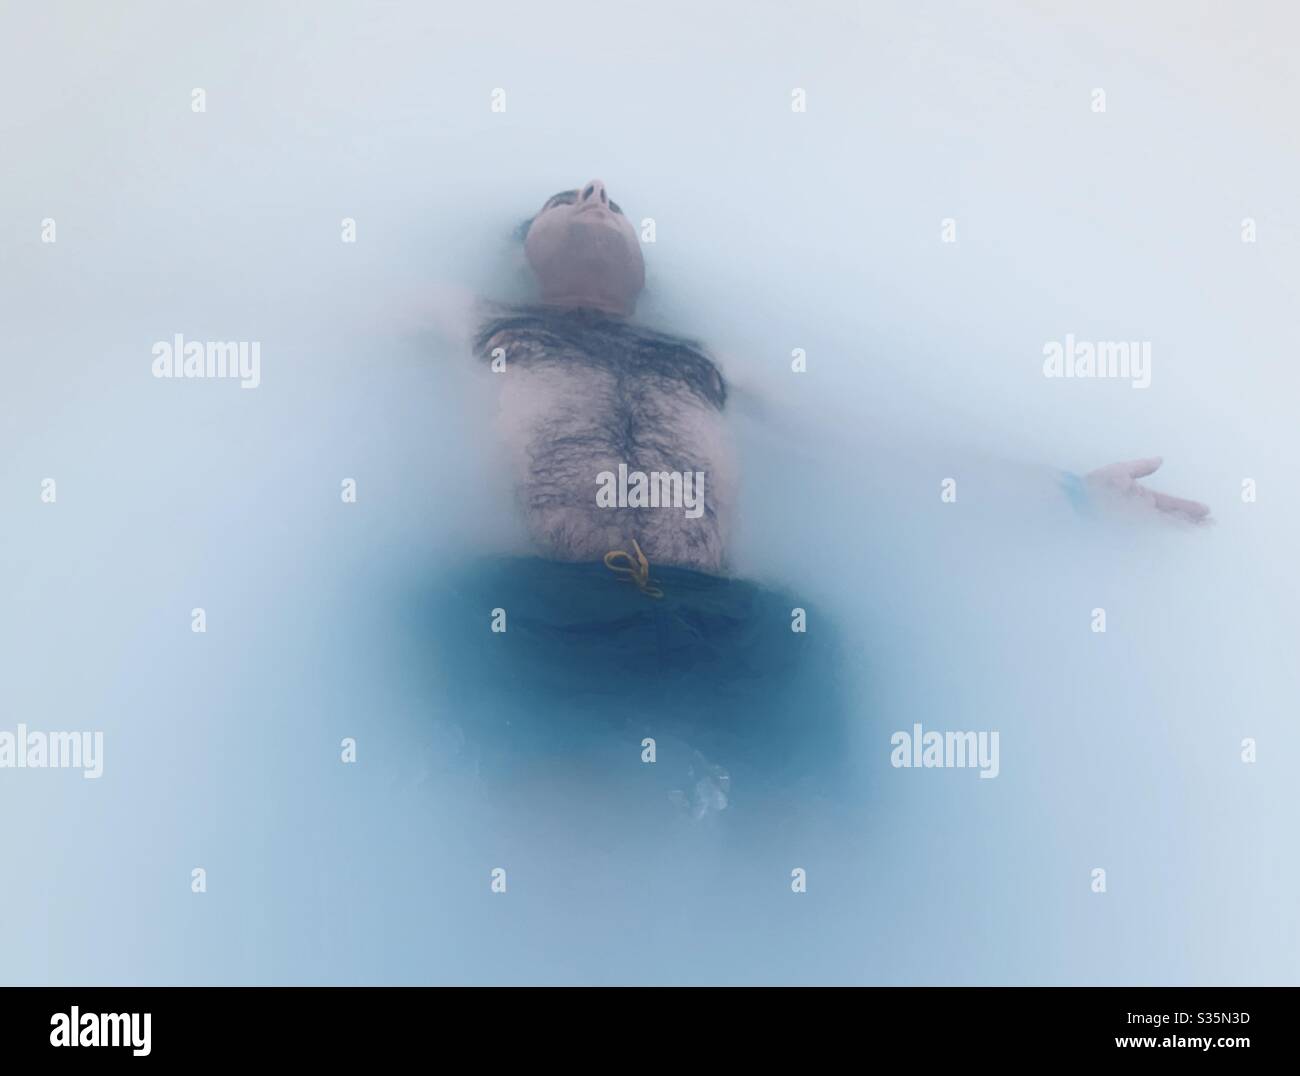 Mann schwimmt in einem milchigen geothermischen Pool. Entspannend und ruhig. Blaue Lagune, Island. Stockfoto